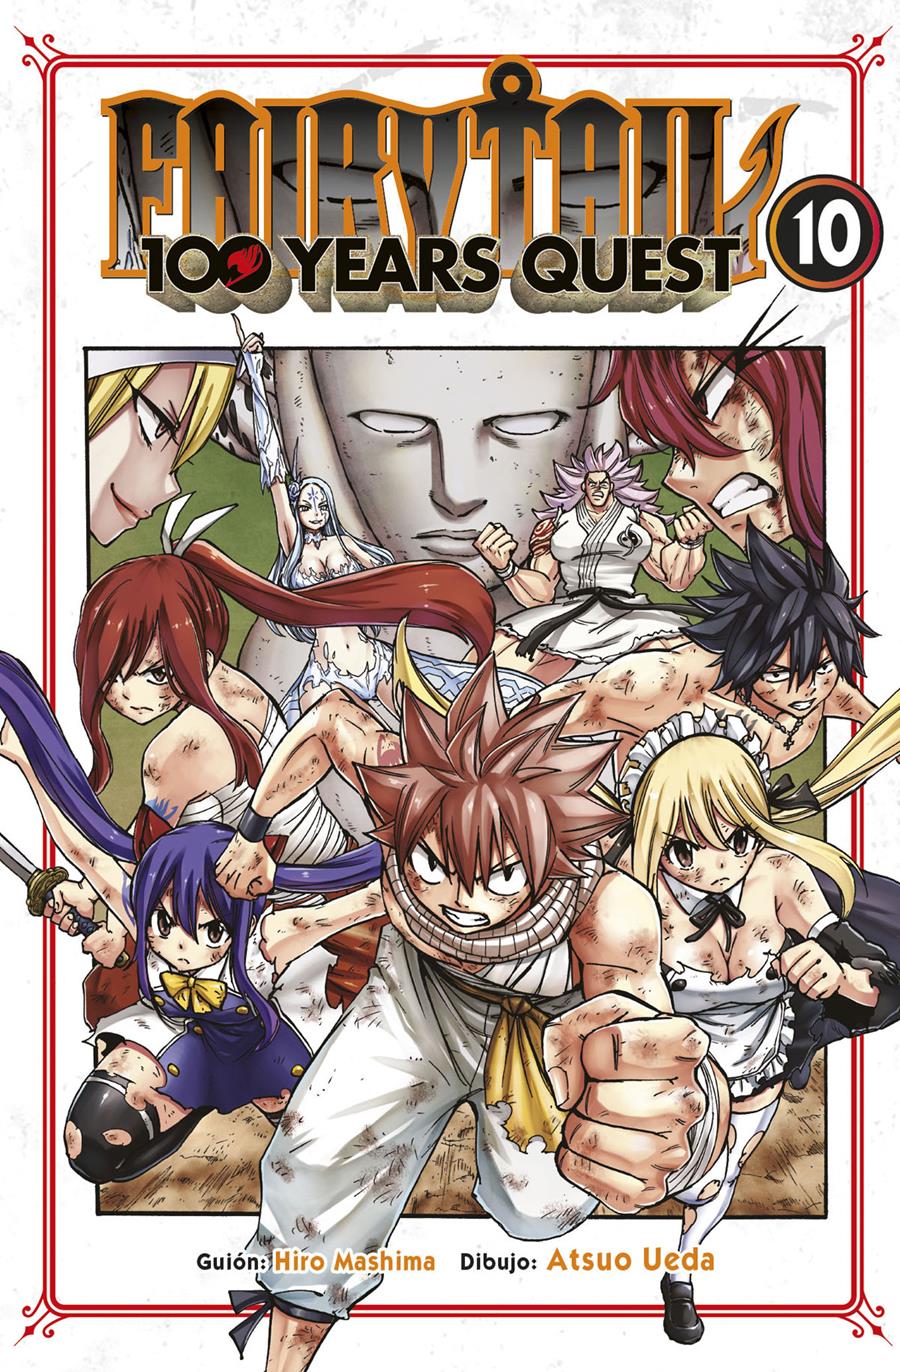 Fairy Tail 100 Quest 10 | N0522-NOR28 | Hiro Mashima, Atsuo Ueda | Terra de Còmic - Tu tienda de cómics online especializada en cómics, manga y merchandising